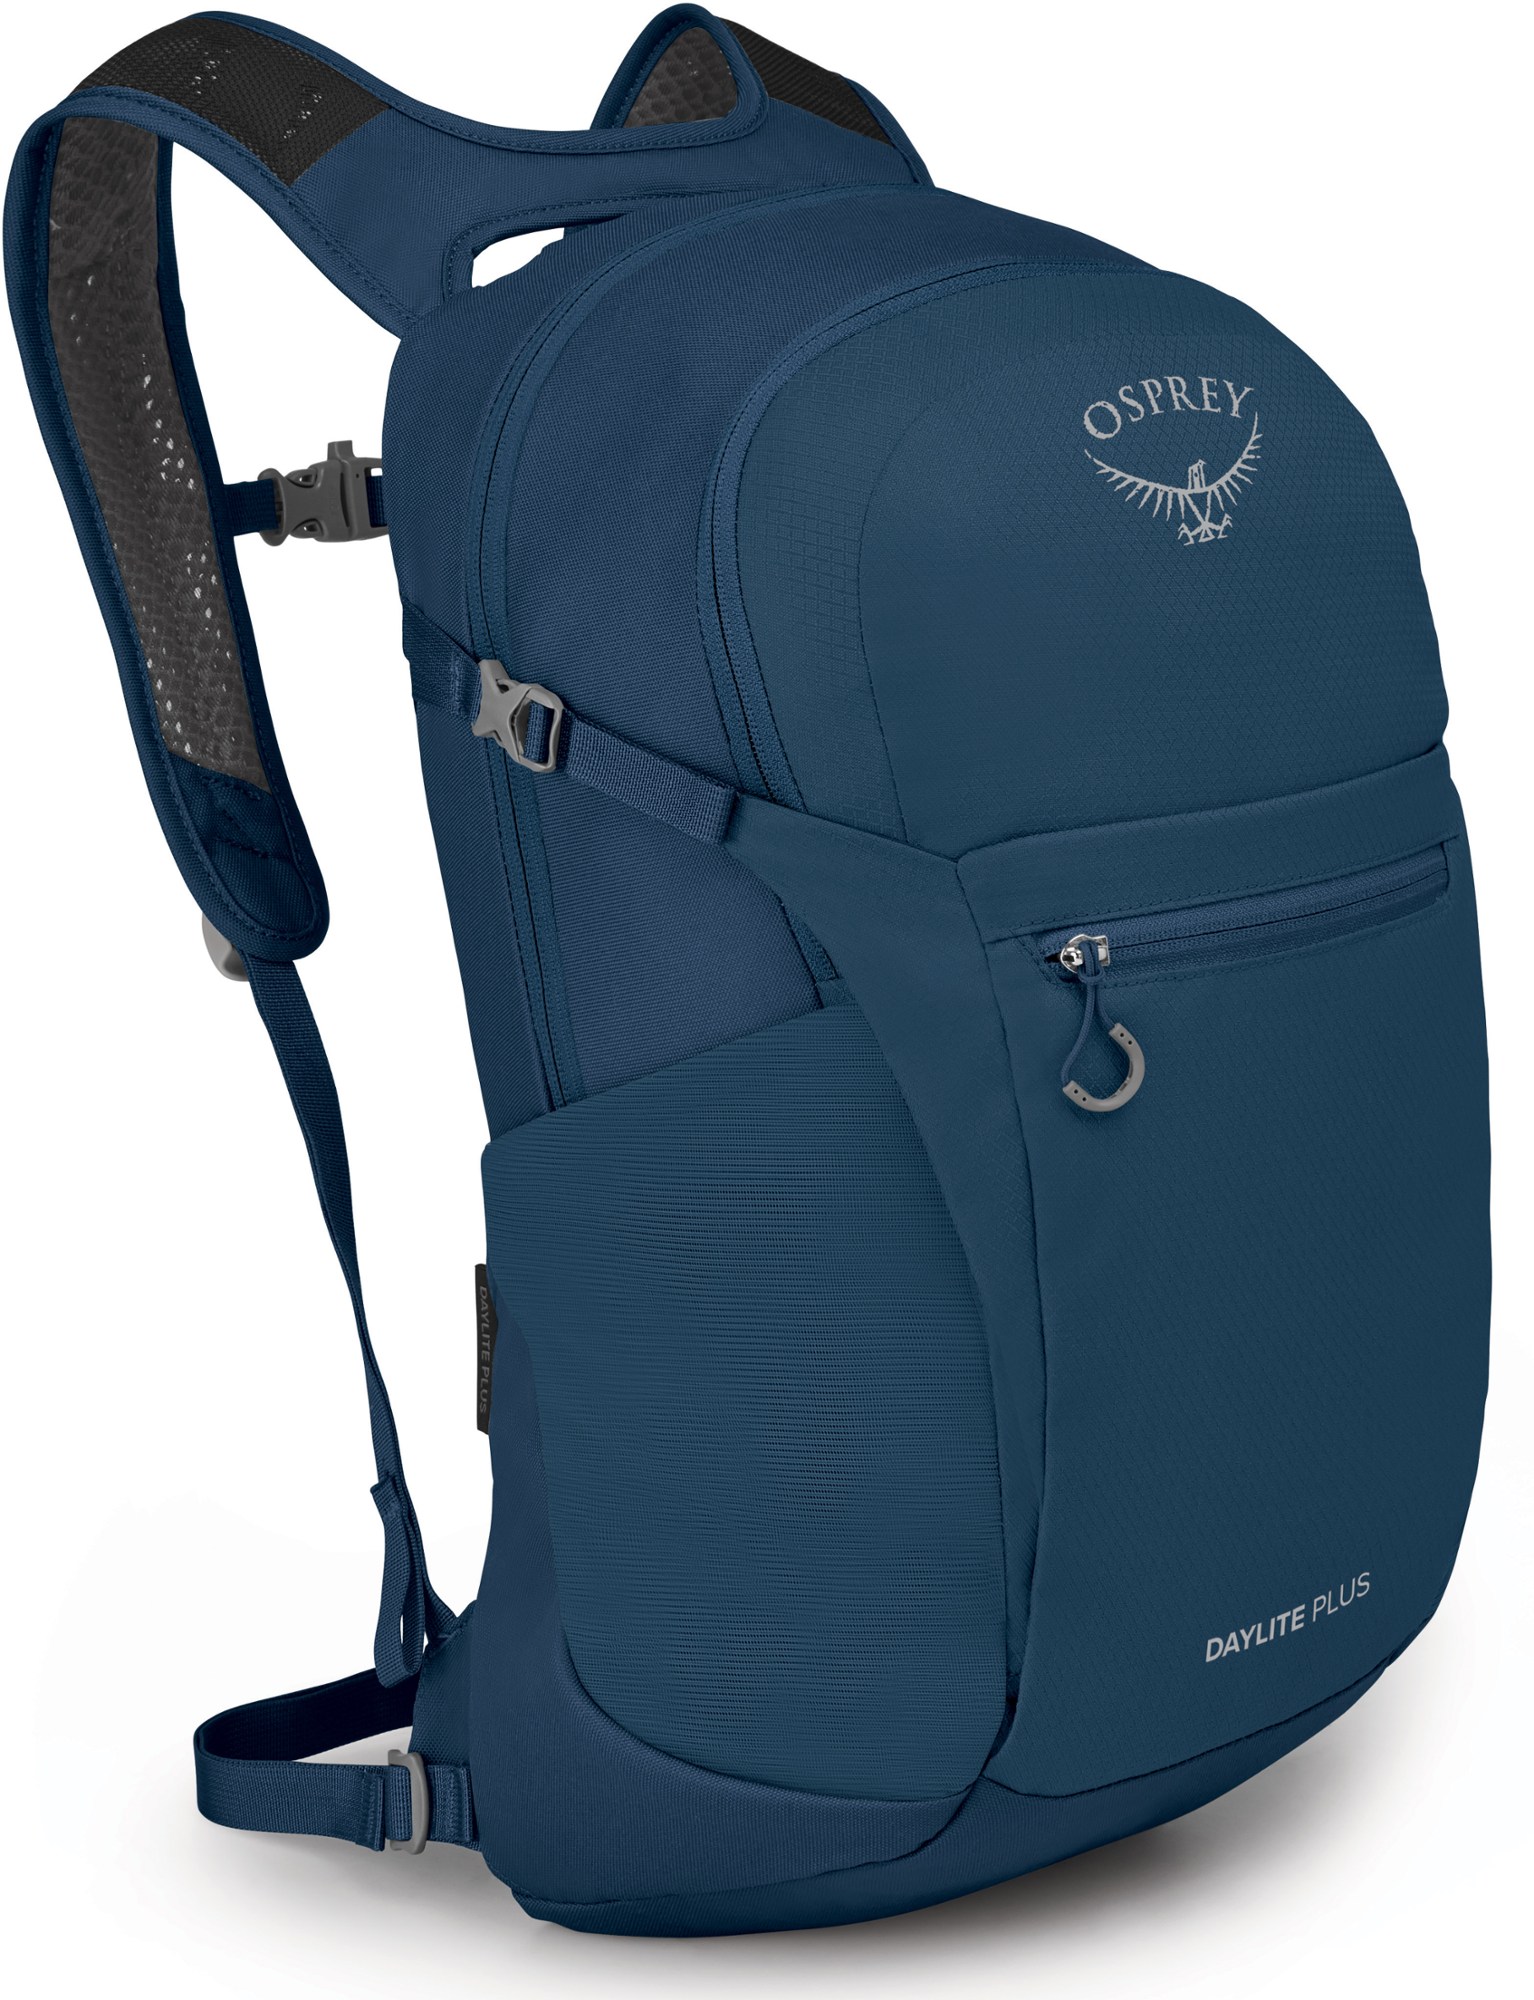 Пакет Daylite Plus Osprey, синий